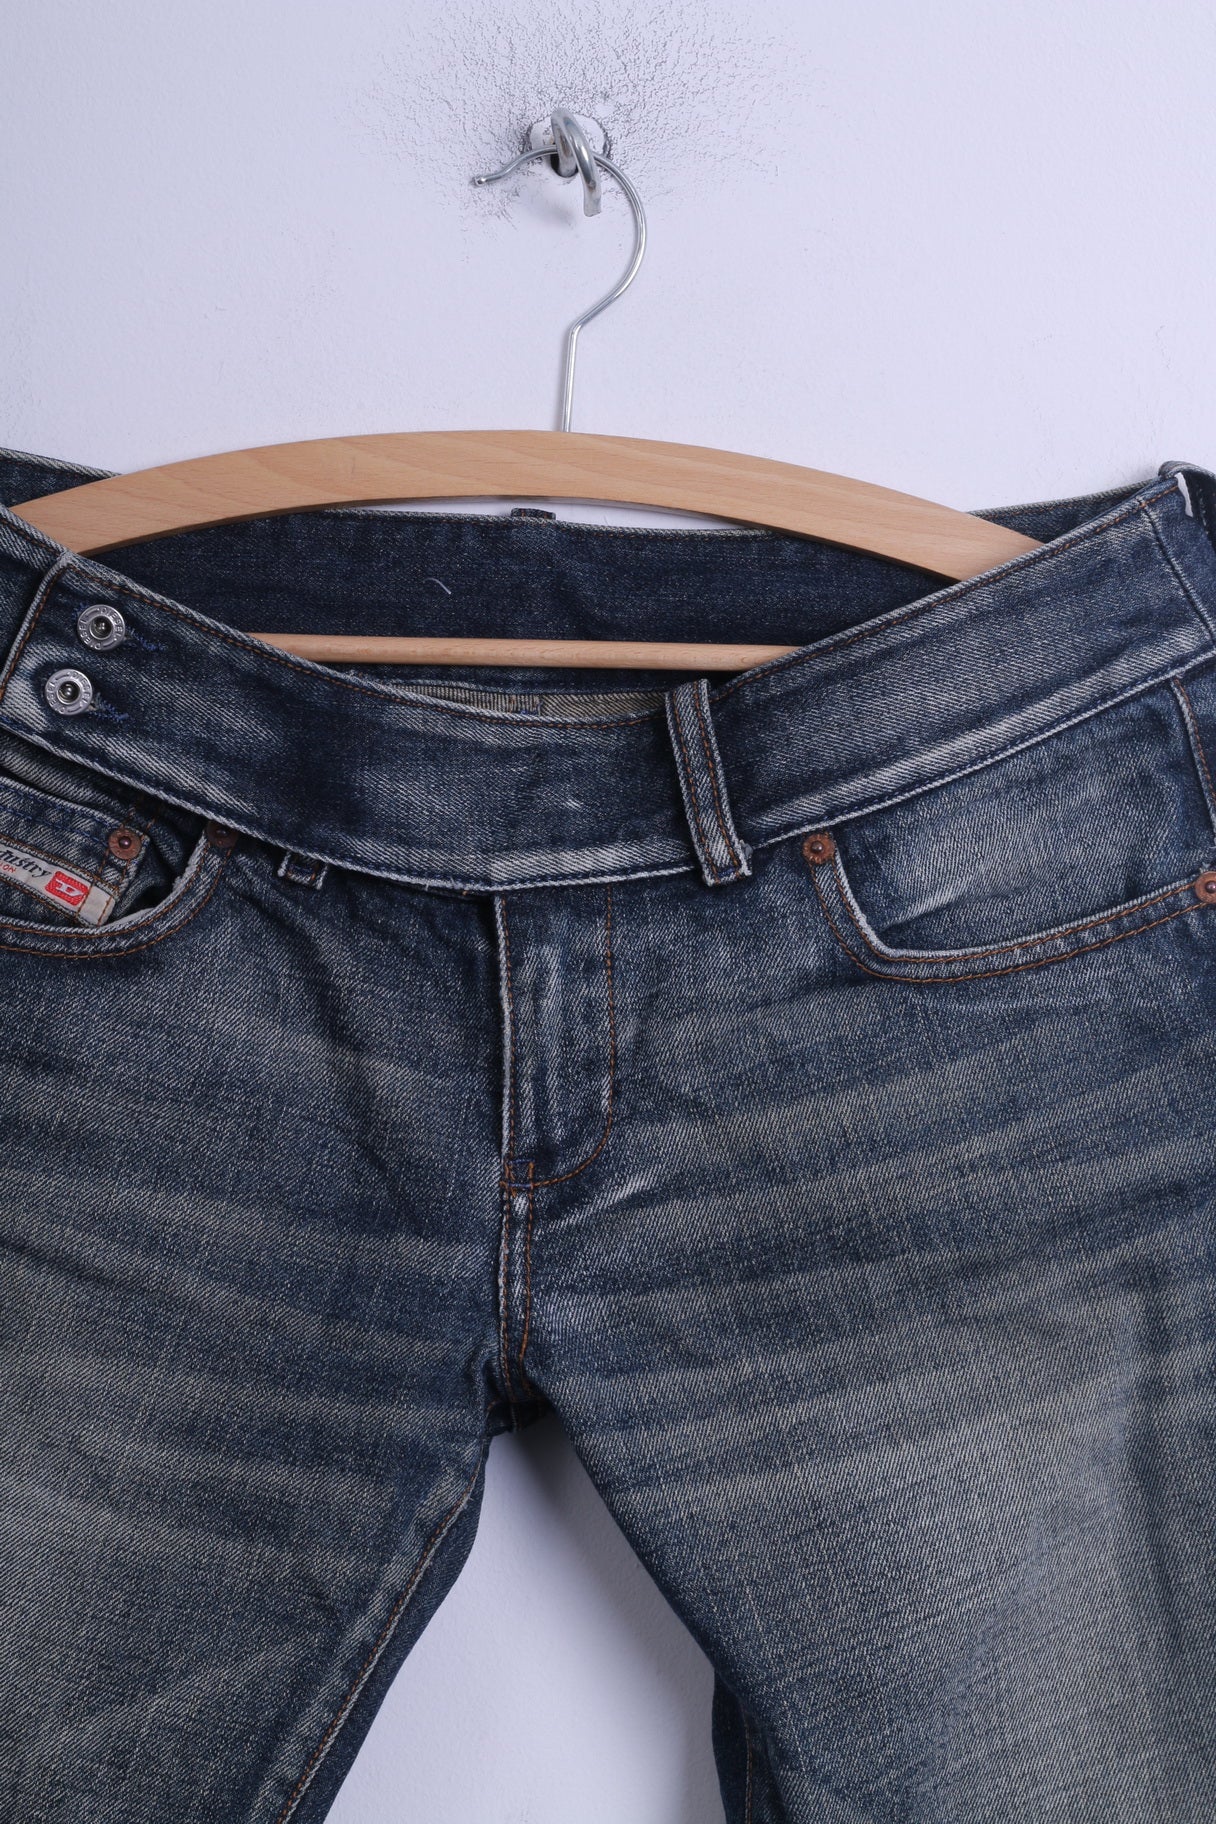 Diesel Industry Womens 31 Trousers Jeans Ble Denim Cotton Low Waist Retrospectclothes